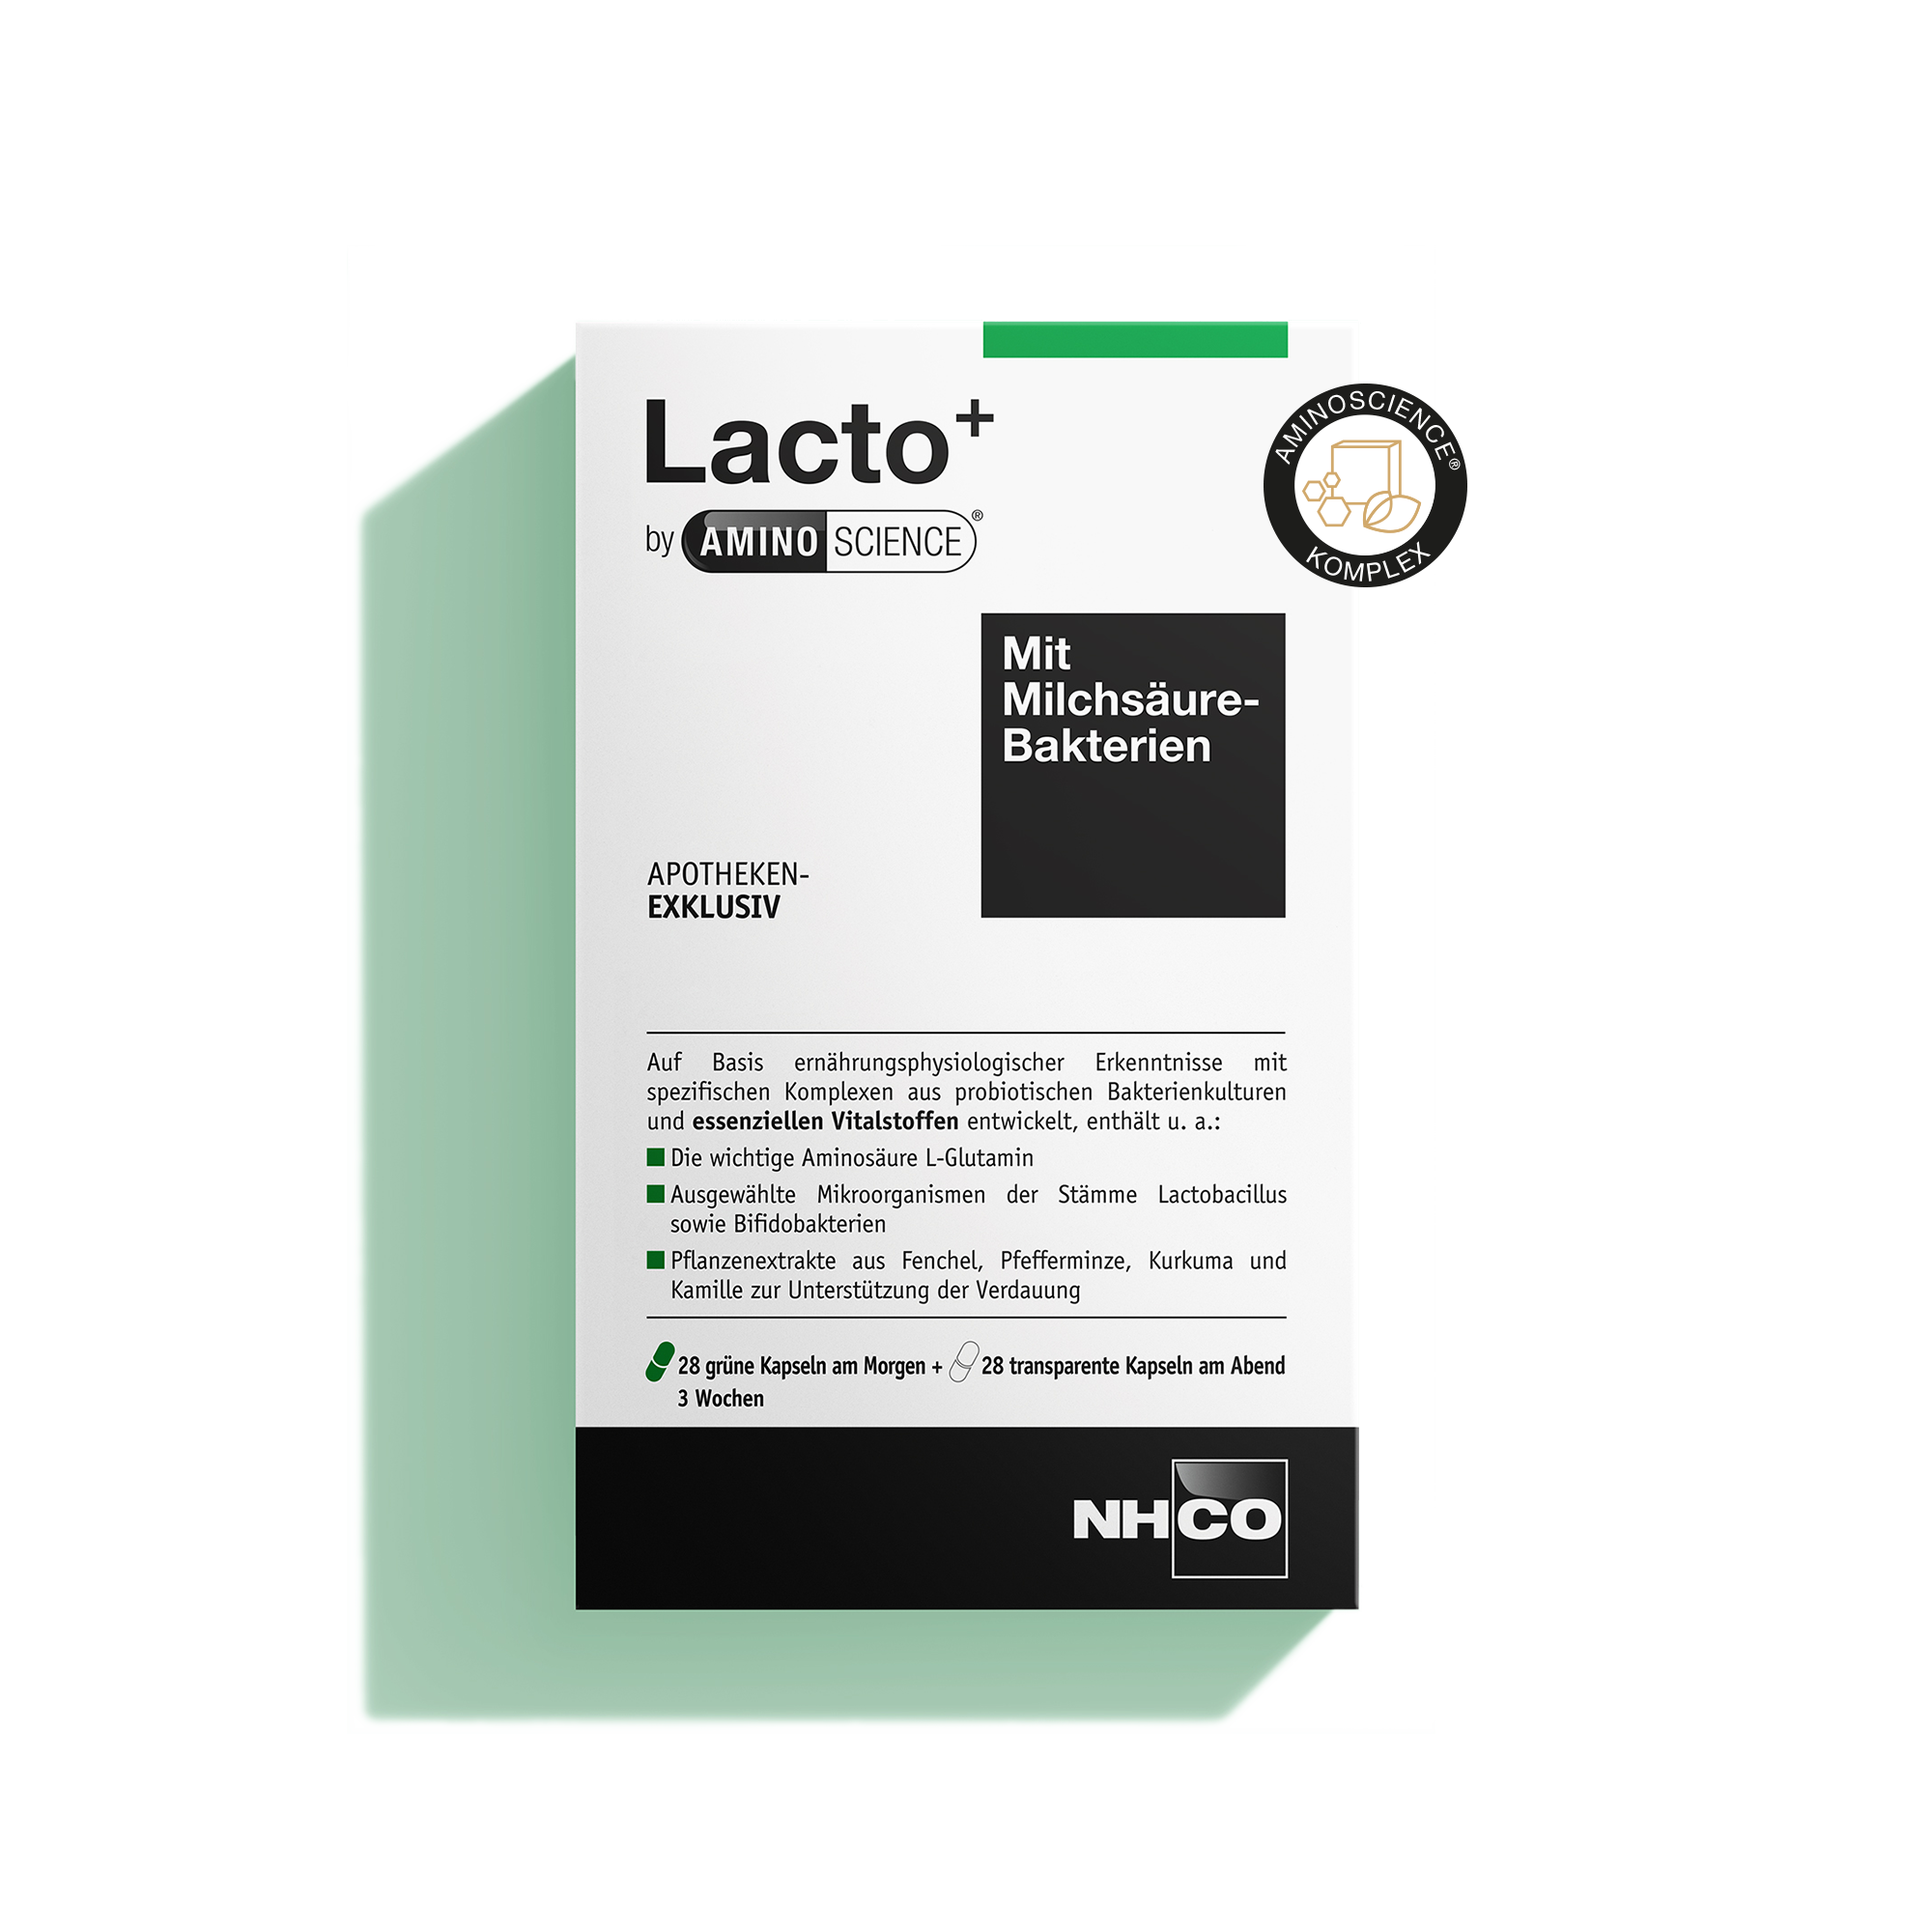 Packshot von Lacto+ mit AminoScience Komplex, Nahrungsergänzung für Verdauung.